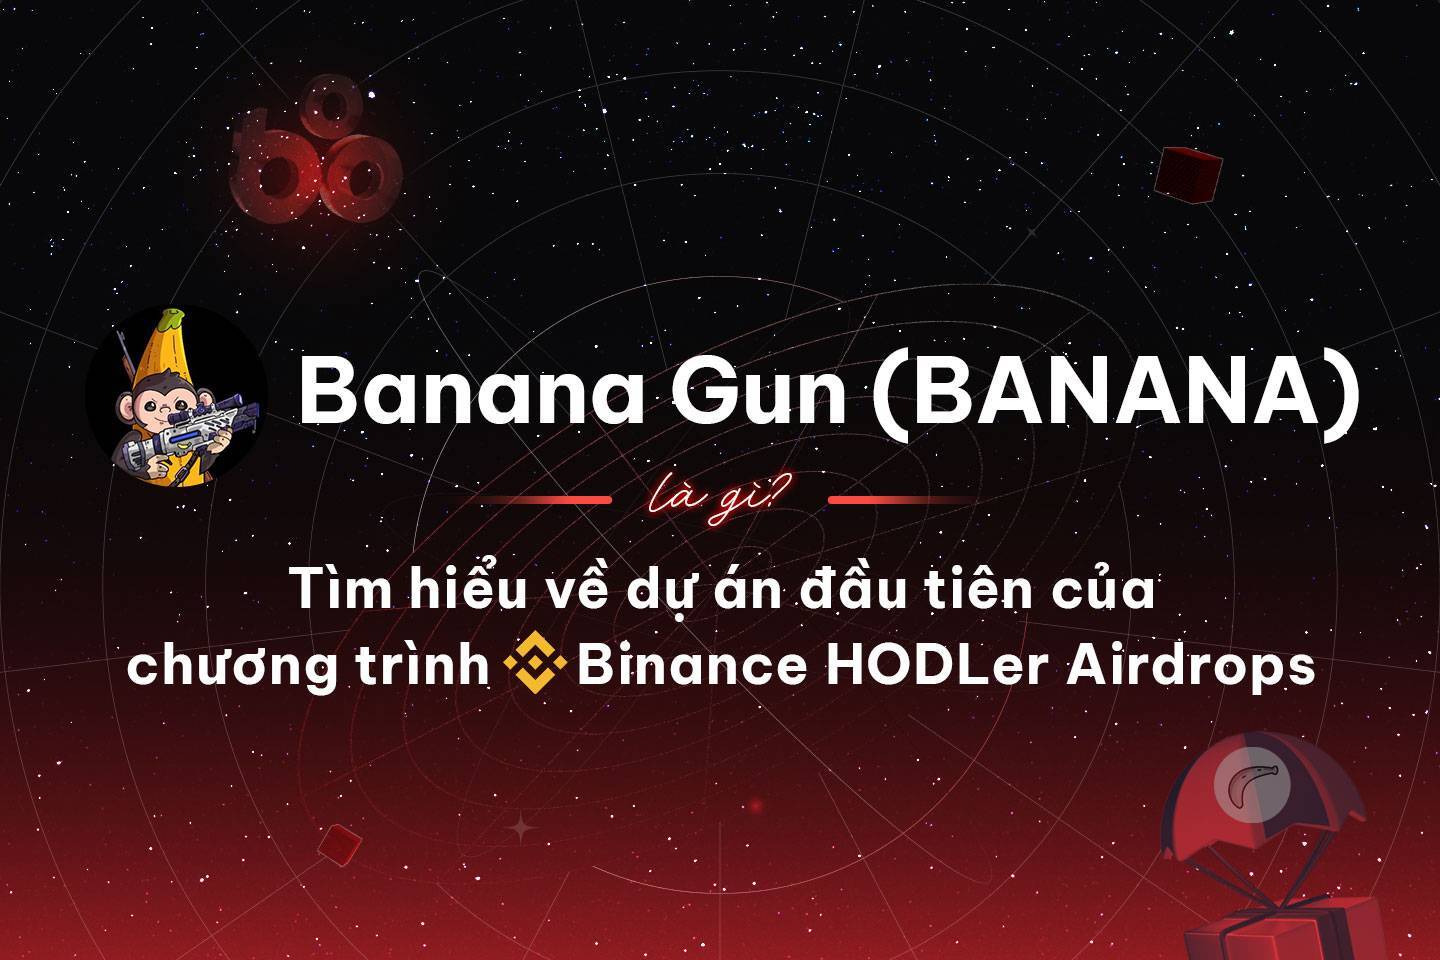 Banana Gun banana Là Gì Tìm Hiểu Về Dự Án Đầu Tiên Của Chương Trình Binance Hodler Airdrops